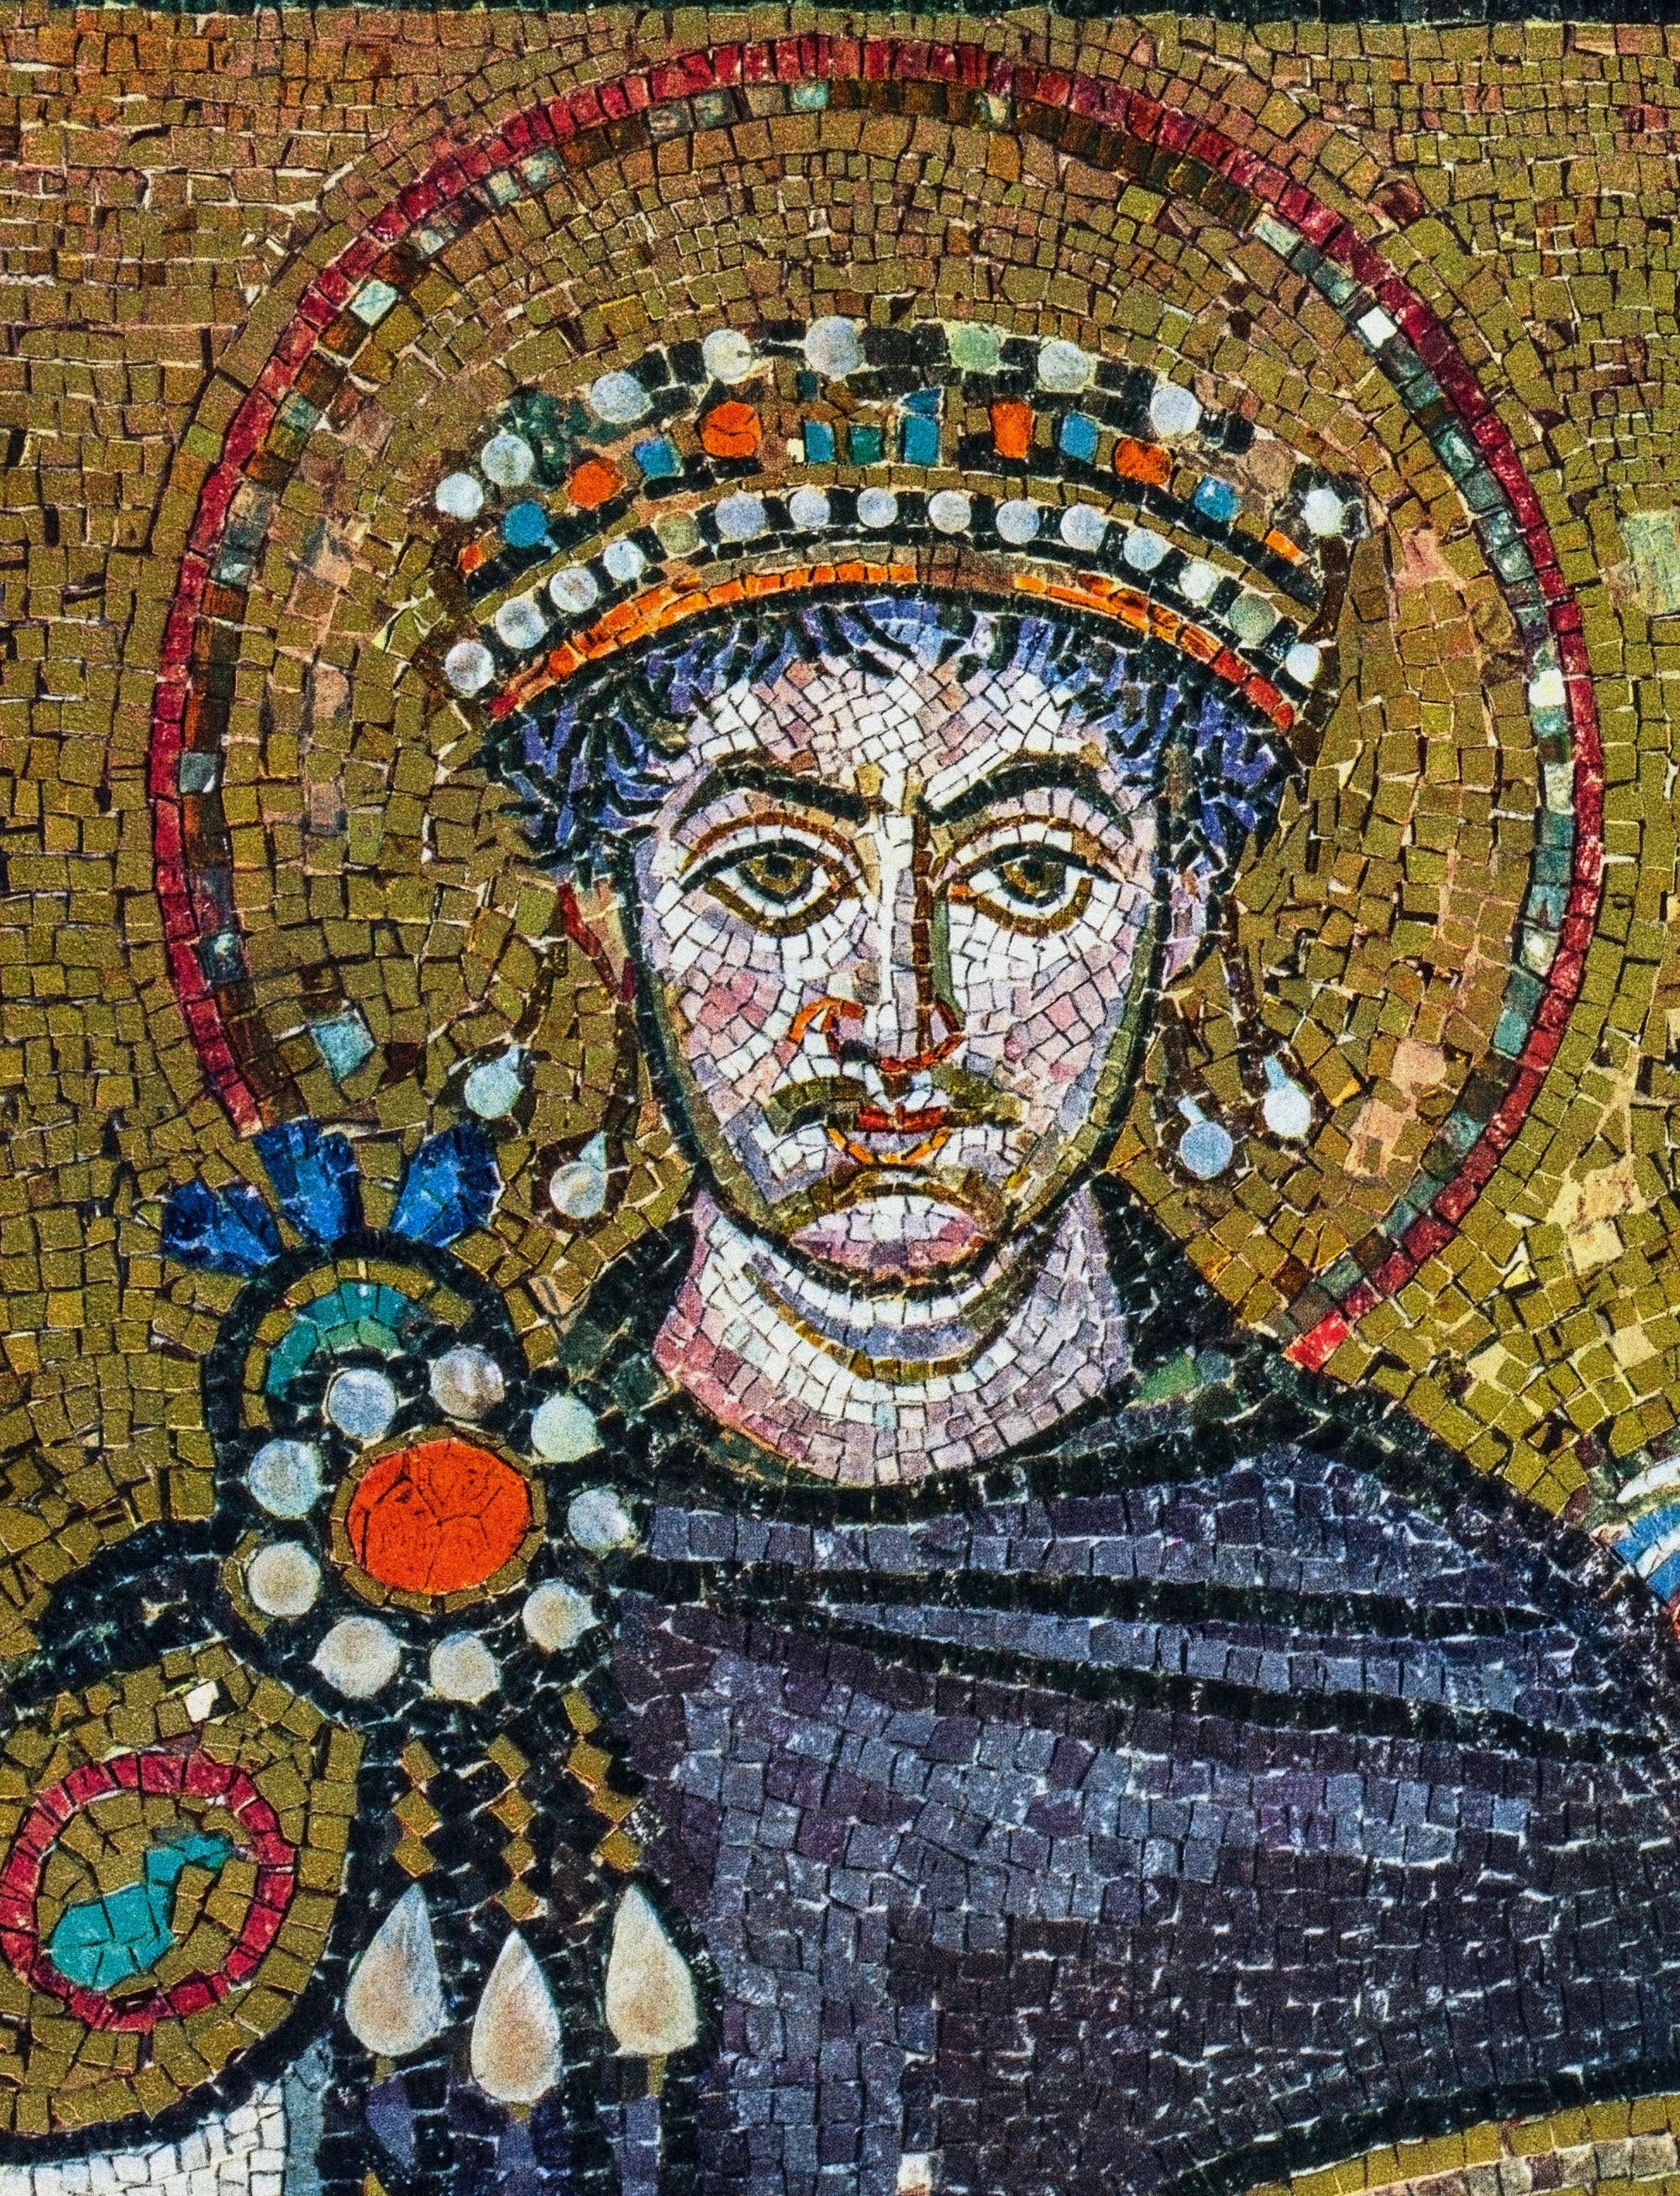 Justinian I.